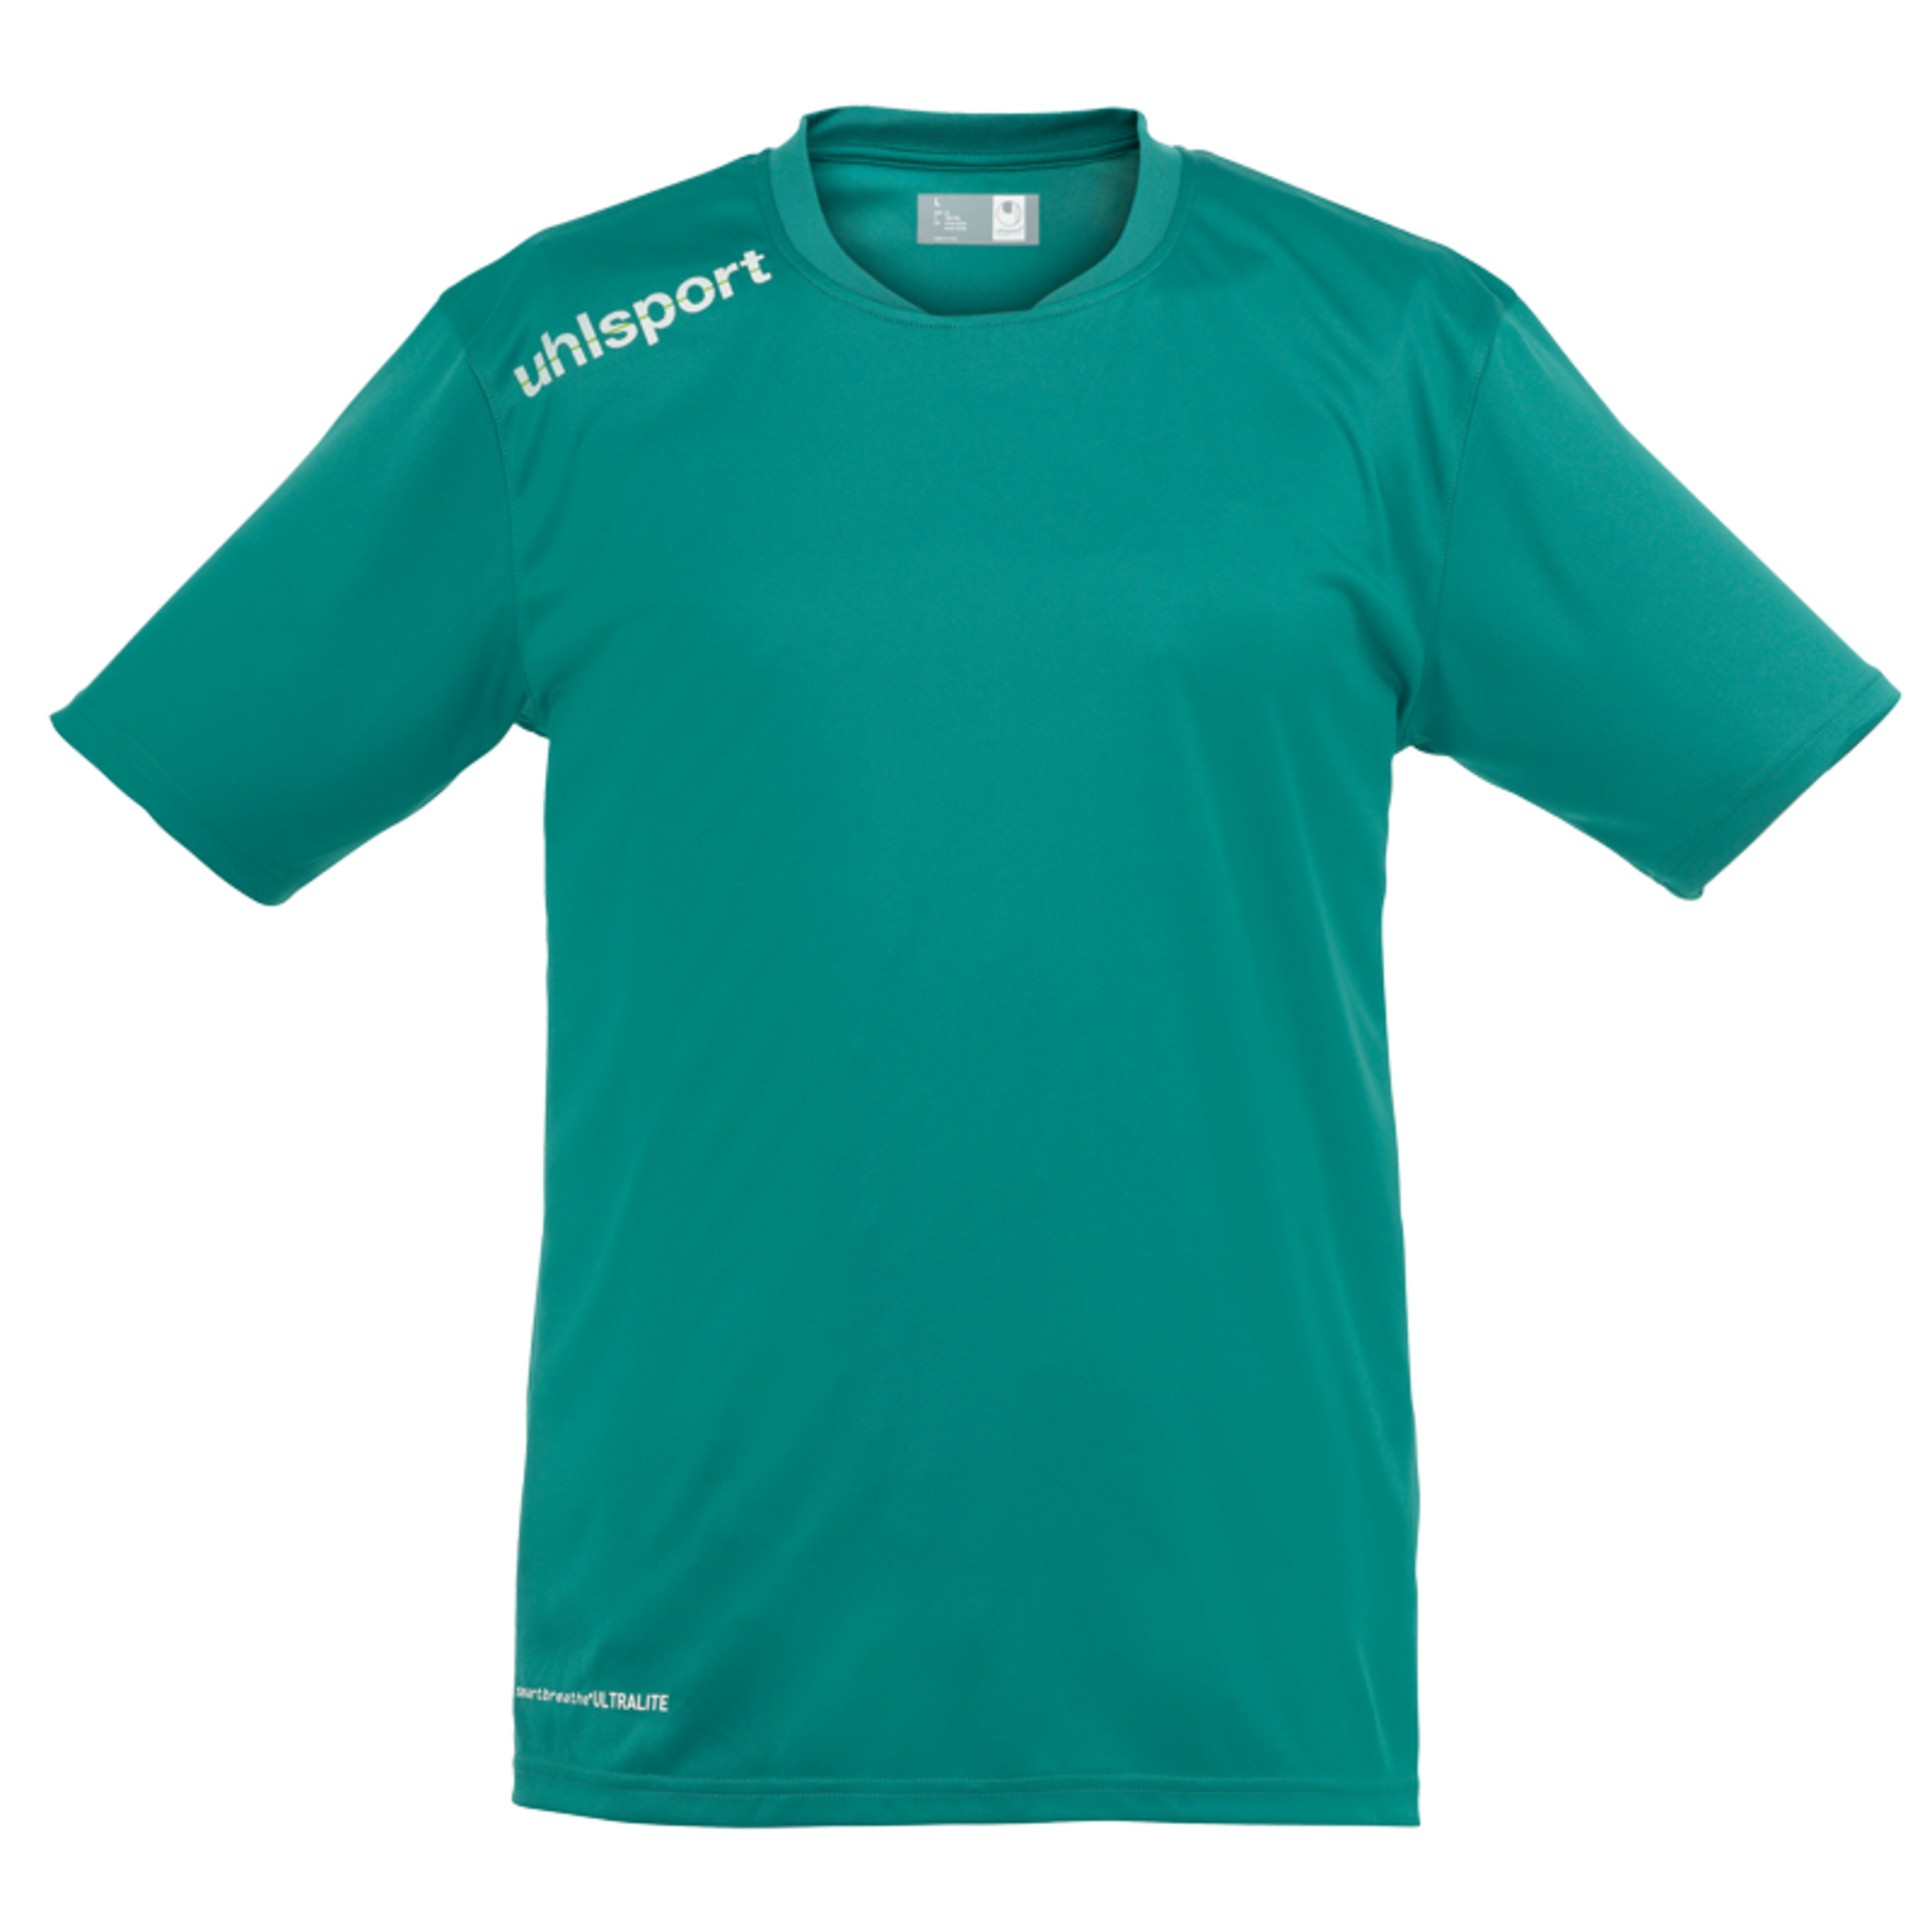 Essential Pes Camiseta De Entrenamiento Lagoon Uhlsport - verde - 